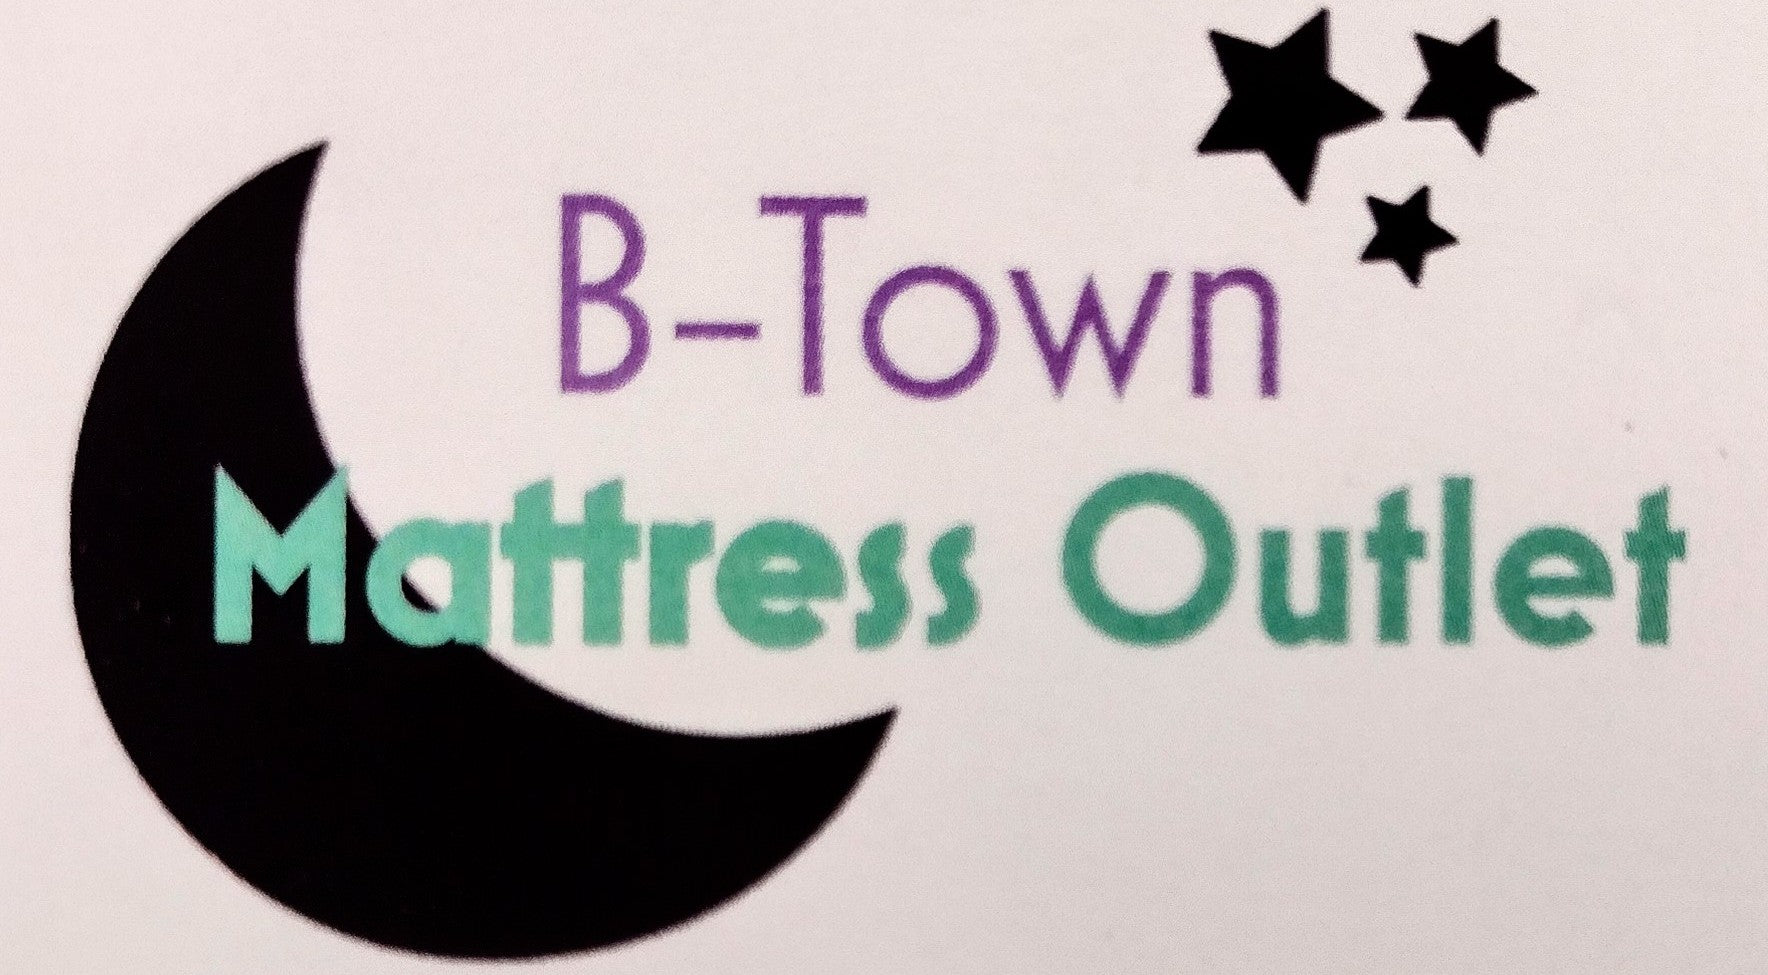 BTown Mattress Outlet